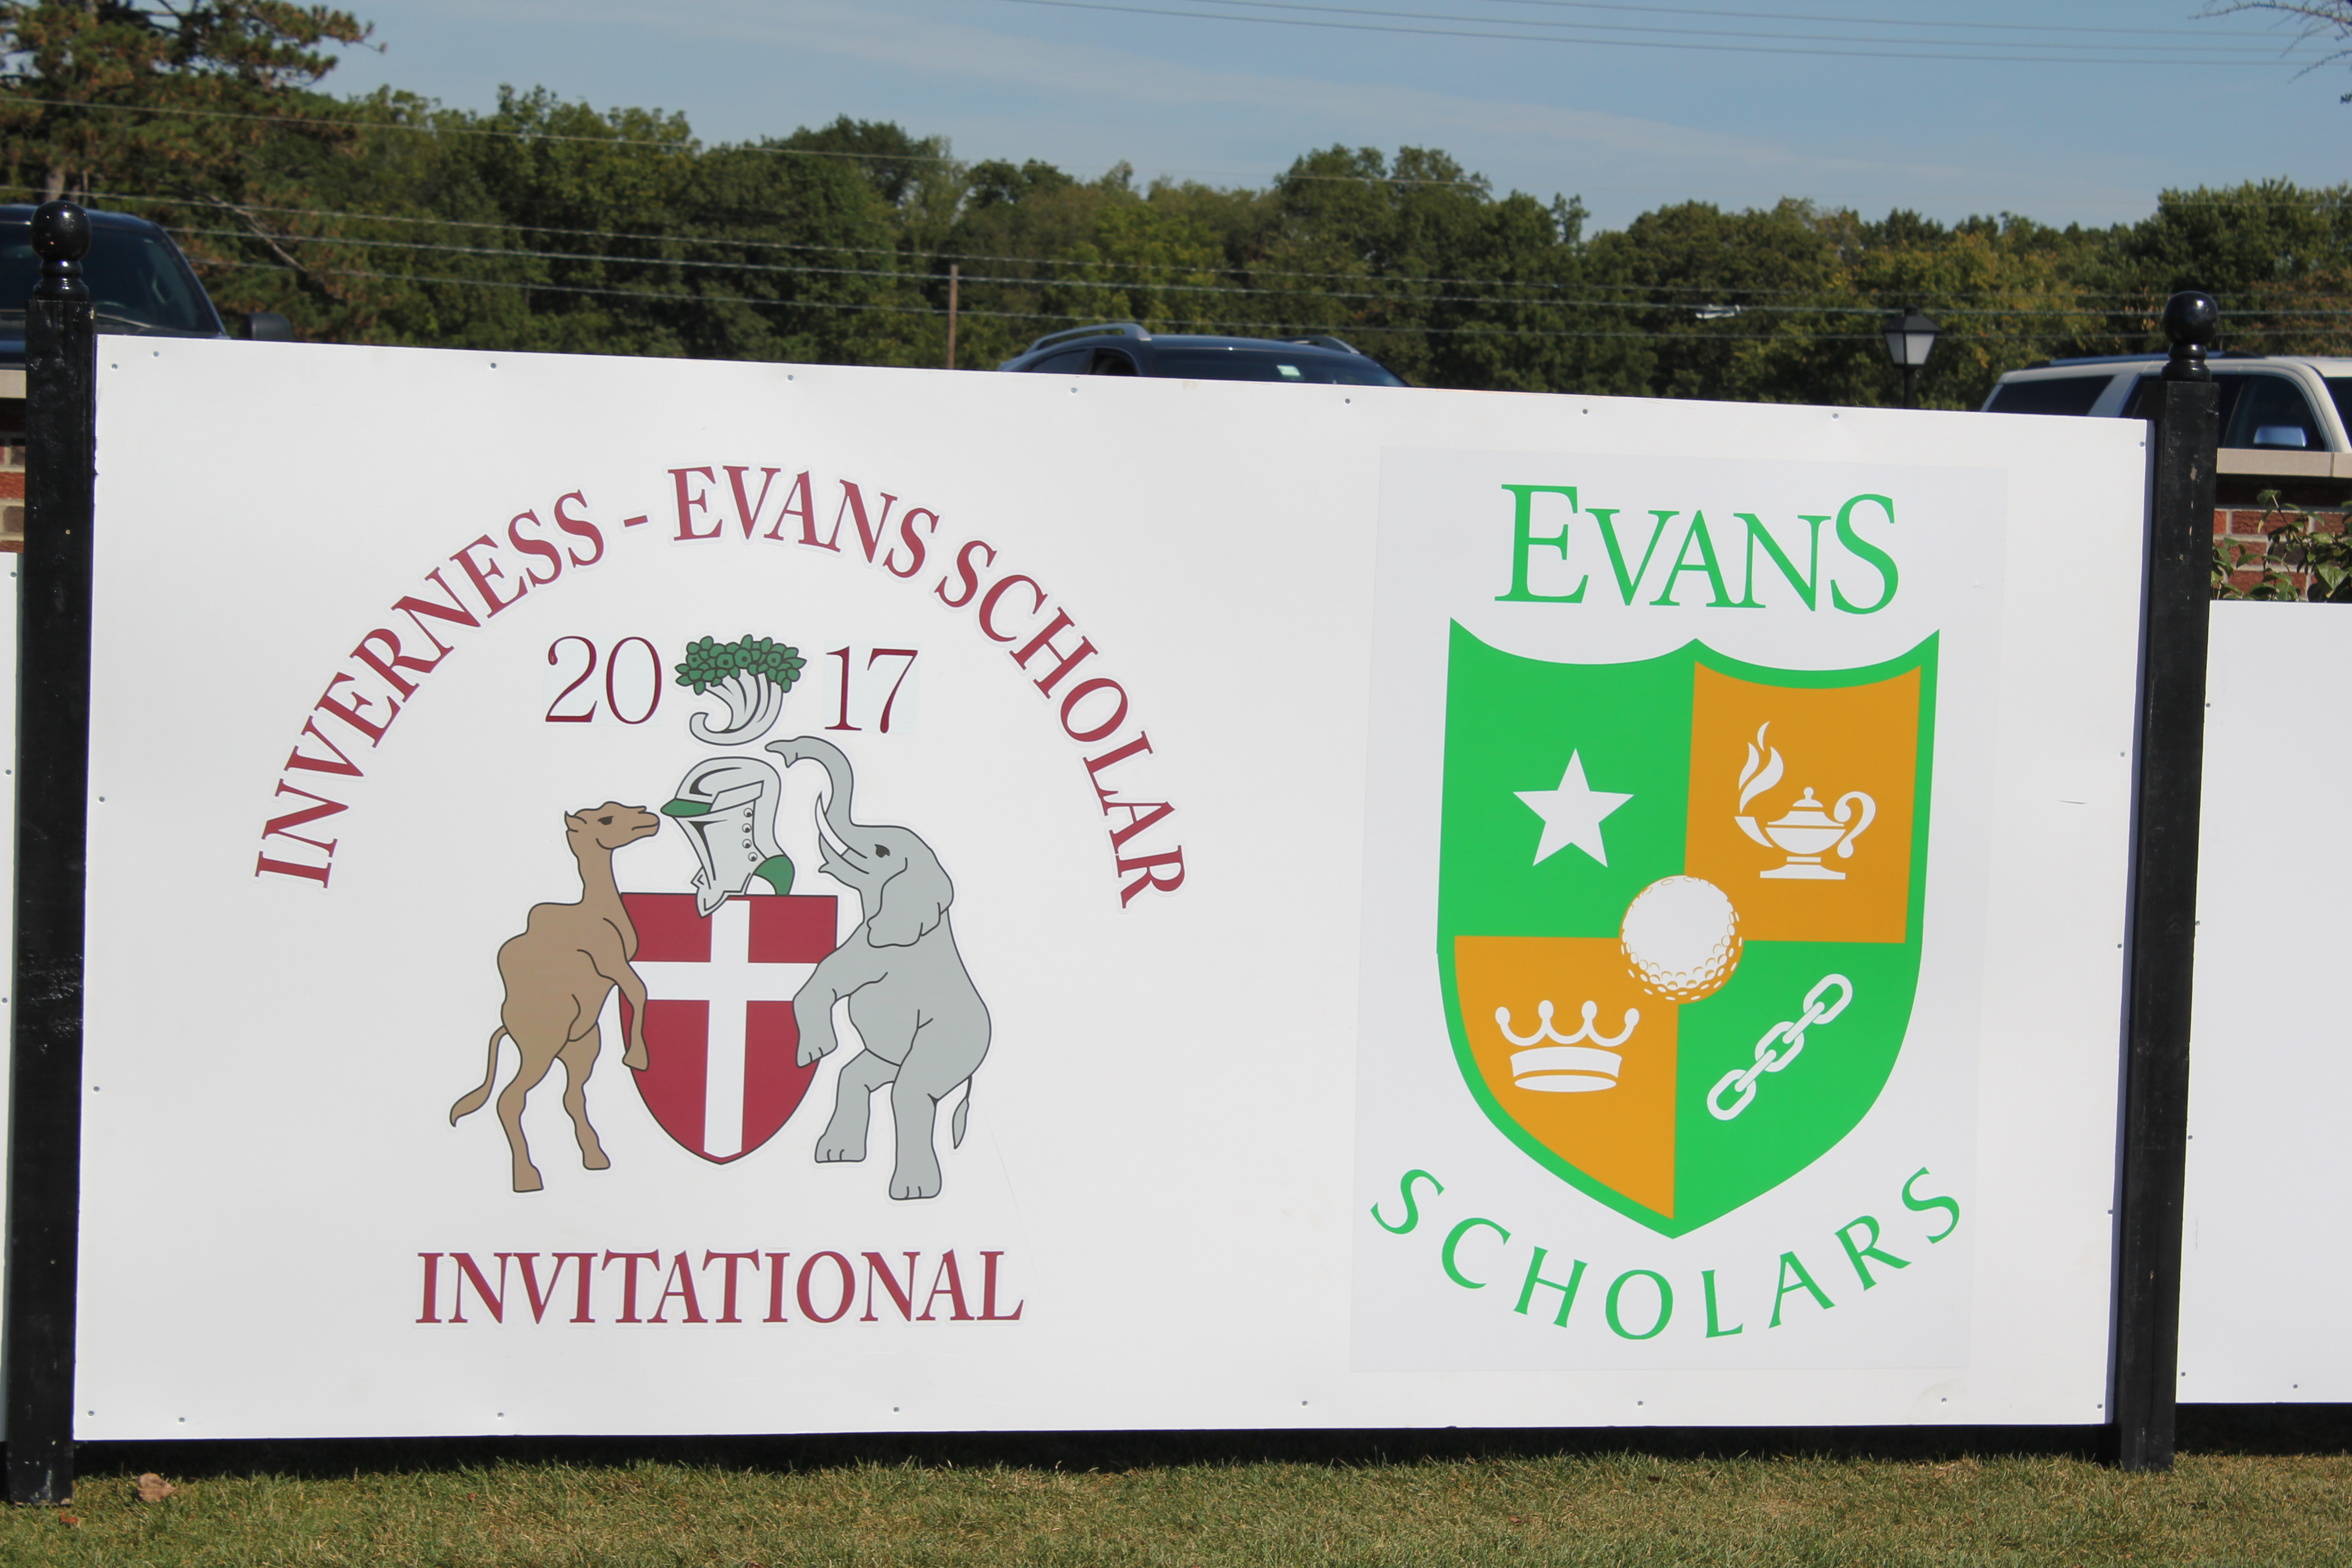 Evans Scholars